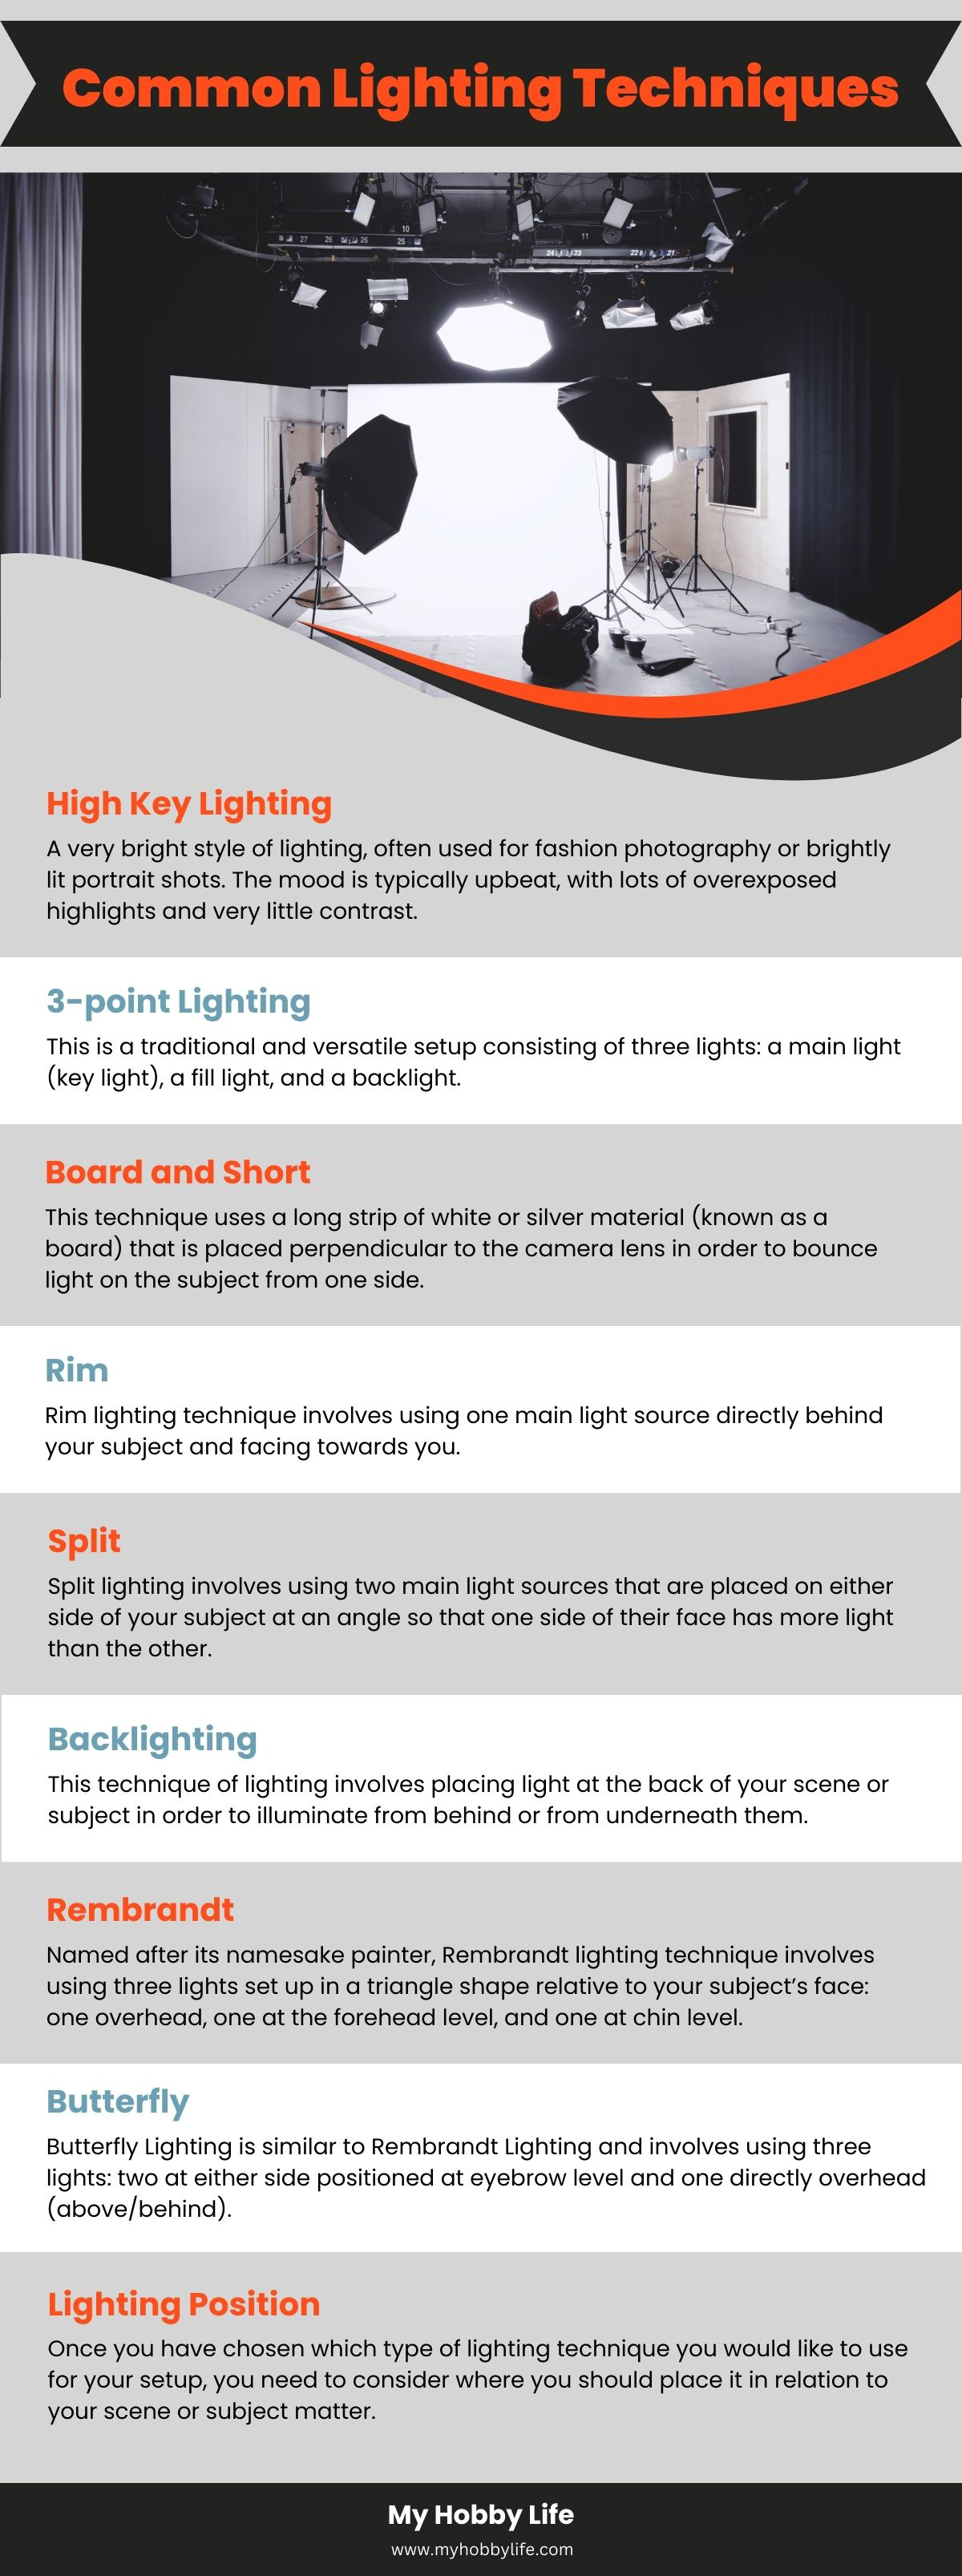 Common Lighting Techniques